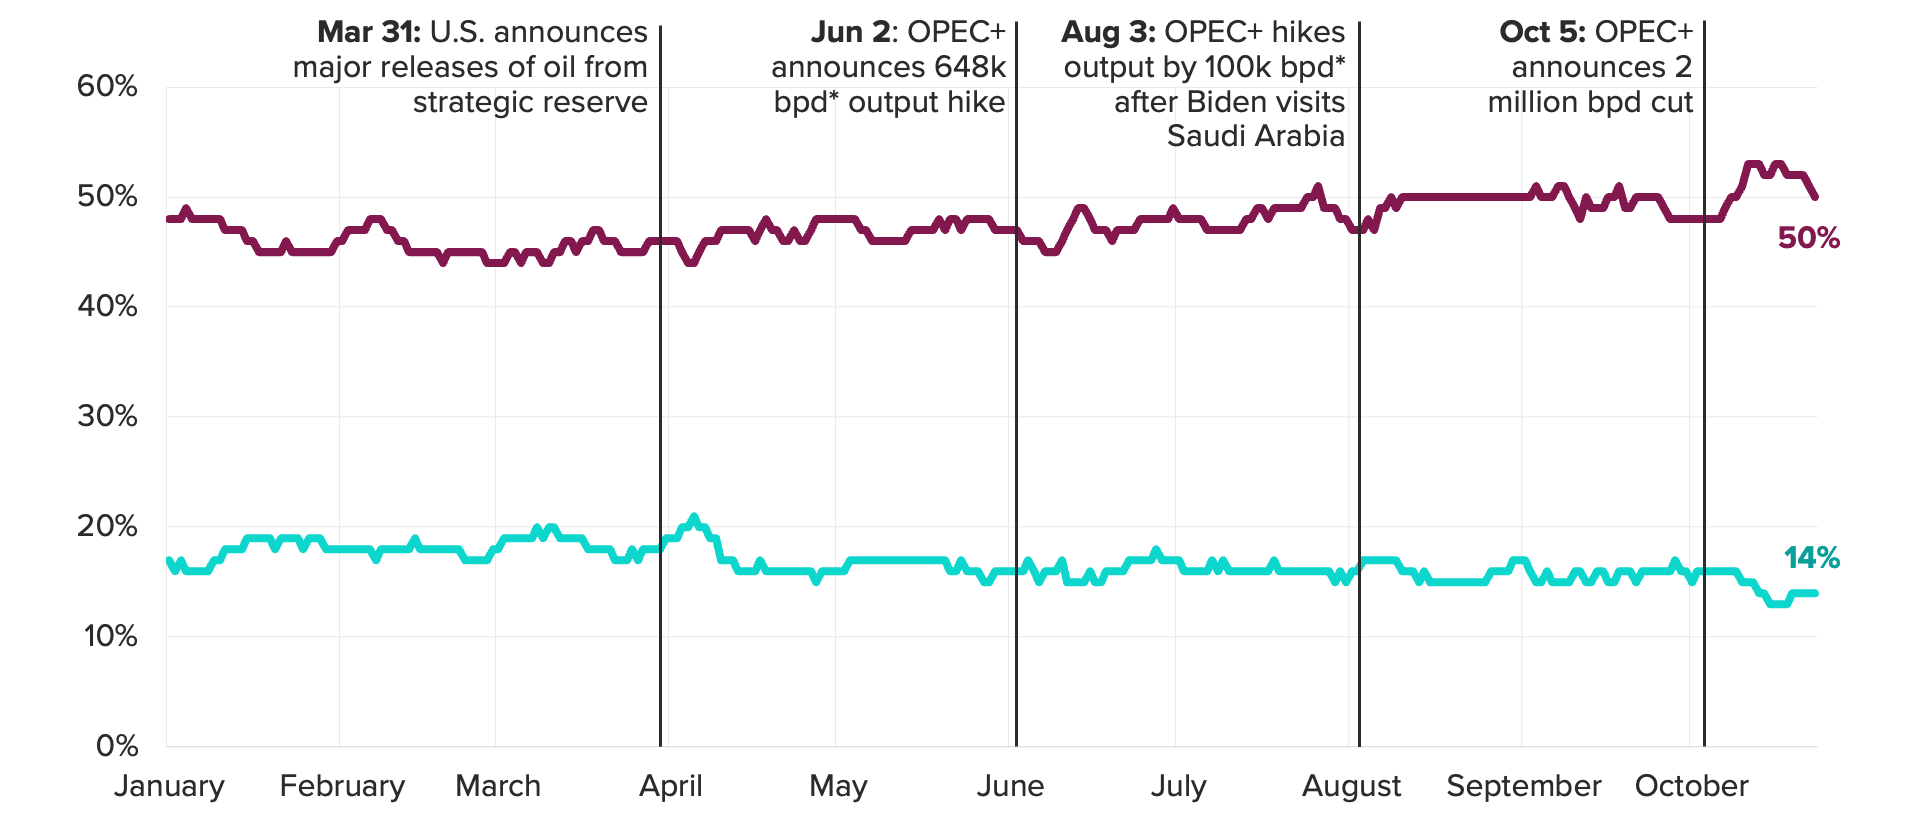 Saudi Arabia’s Popularity in U.S. Reached 2022 Low After OPEC+ Cut